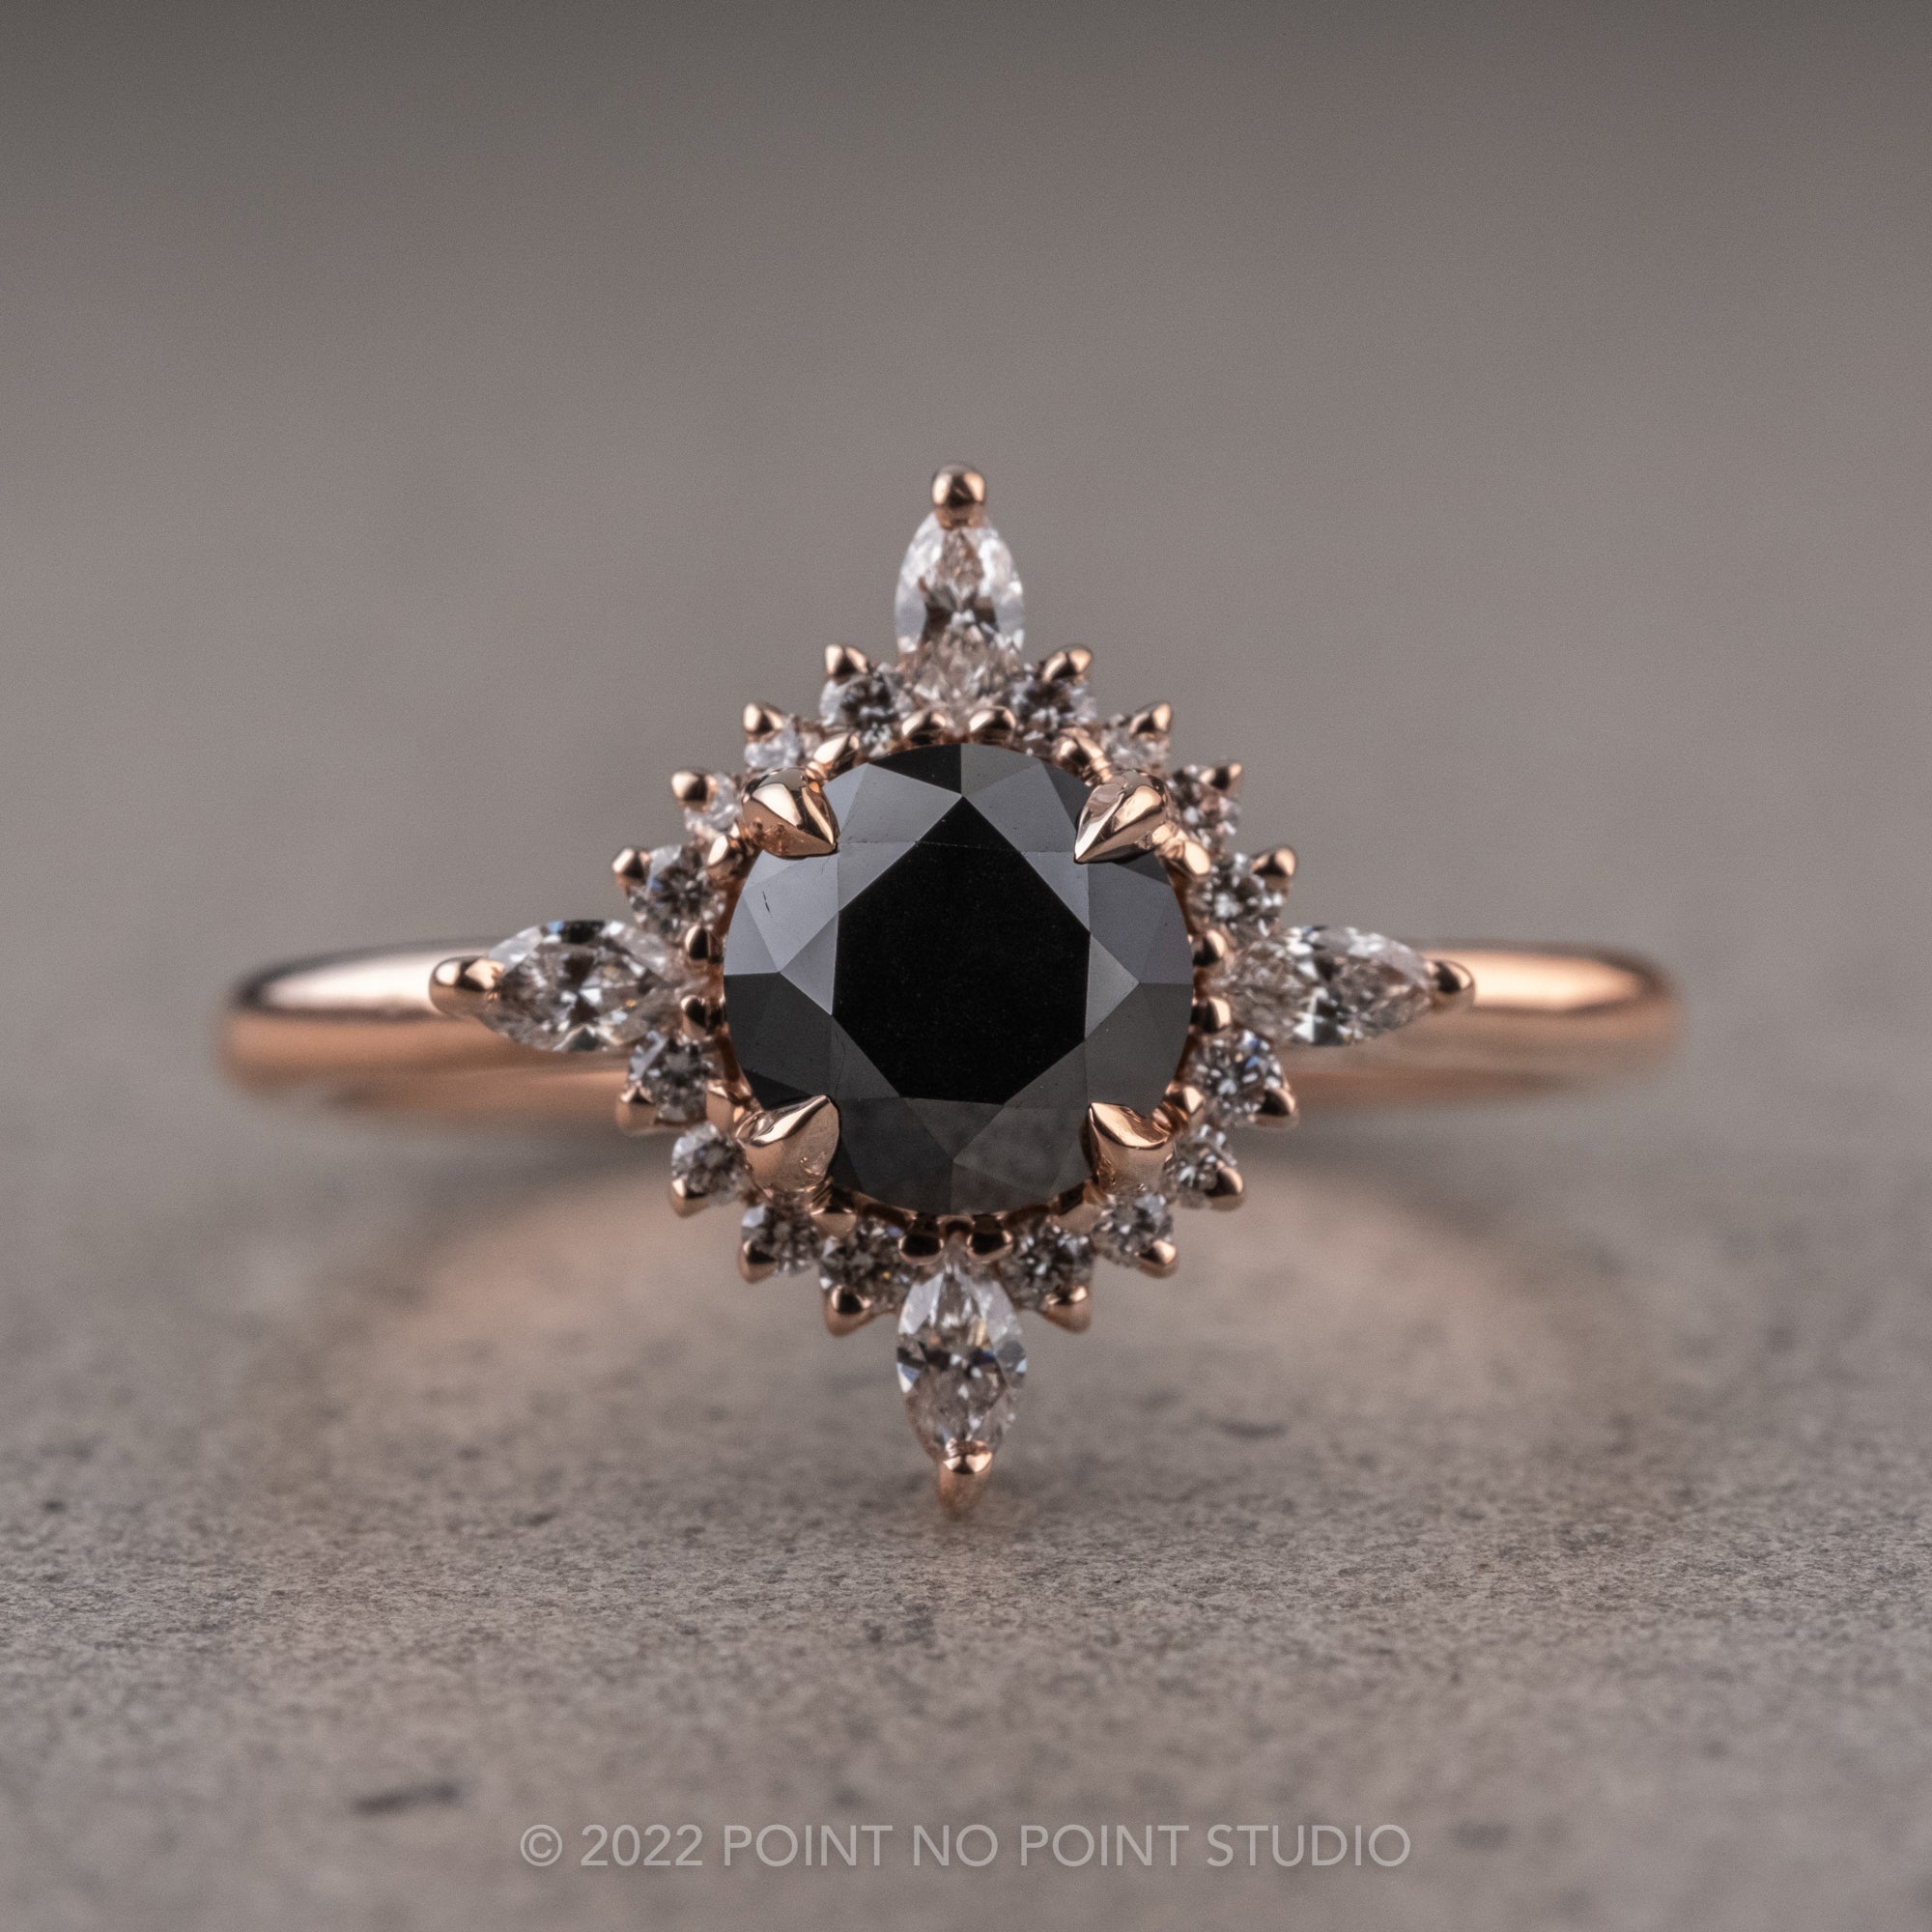 neri ring – 3 carat lab grown diamond engagement ring – J Hollywood Designs